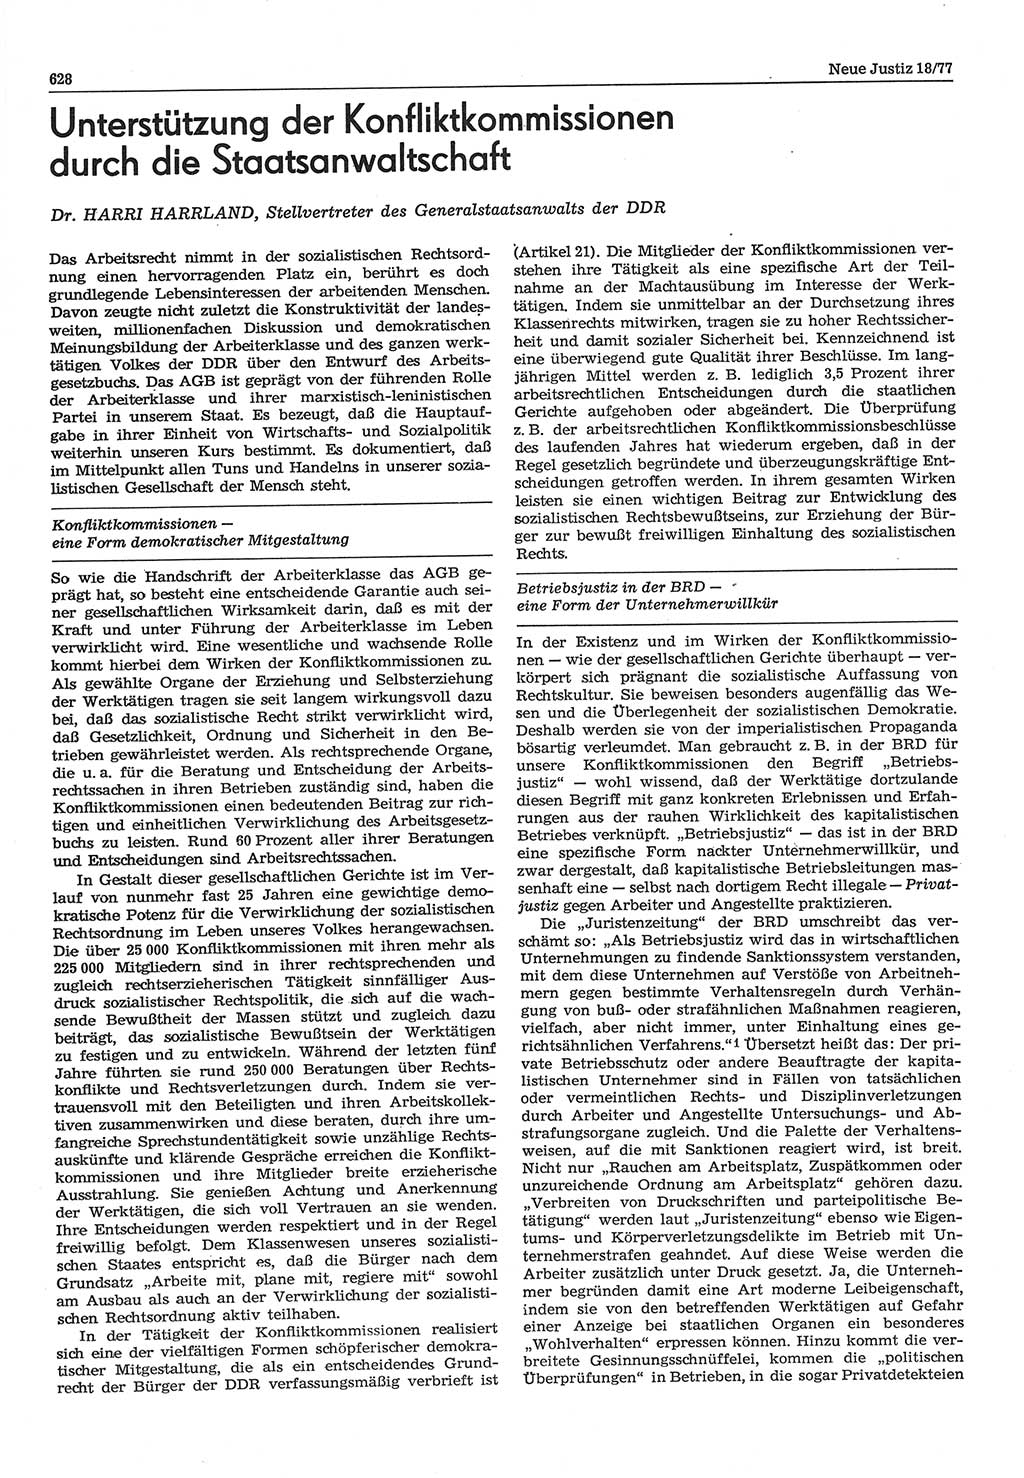 Neue Justiz (NJ), Zeitschrift für Recht und Rechtswissenschaft-Zeitschrift, sozialistisches Recht und Gesetzlichkeit, 31. Jahrgang 1977, Seite 628 (NJ DDR 1977, S. 628)